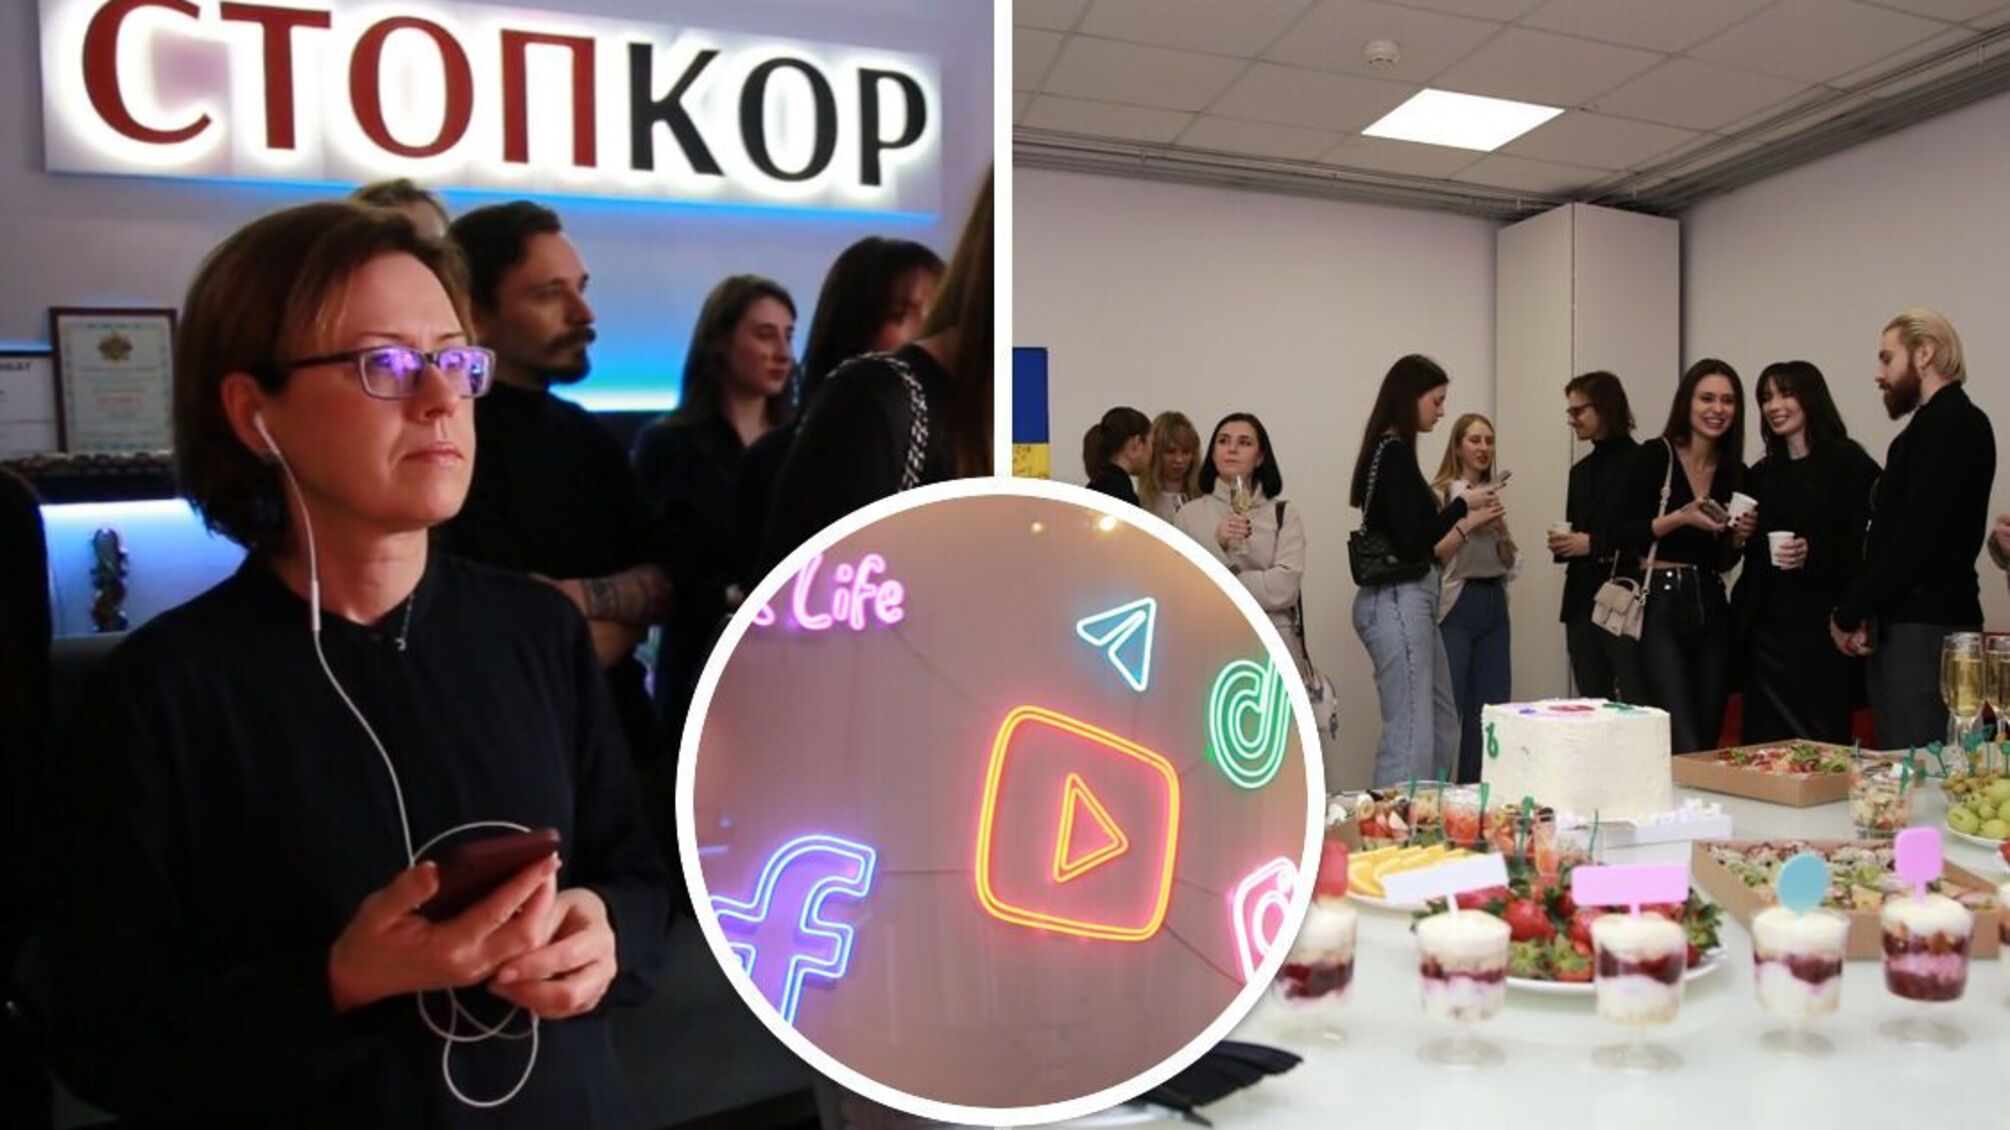 Перерезание ленты, фуршет и звездные гости: в Киеве состоялось открытие студии СтопКора